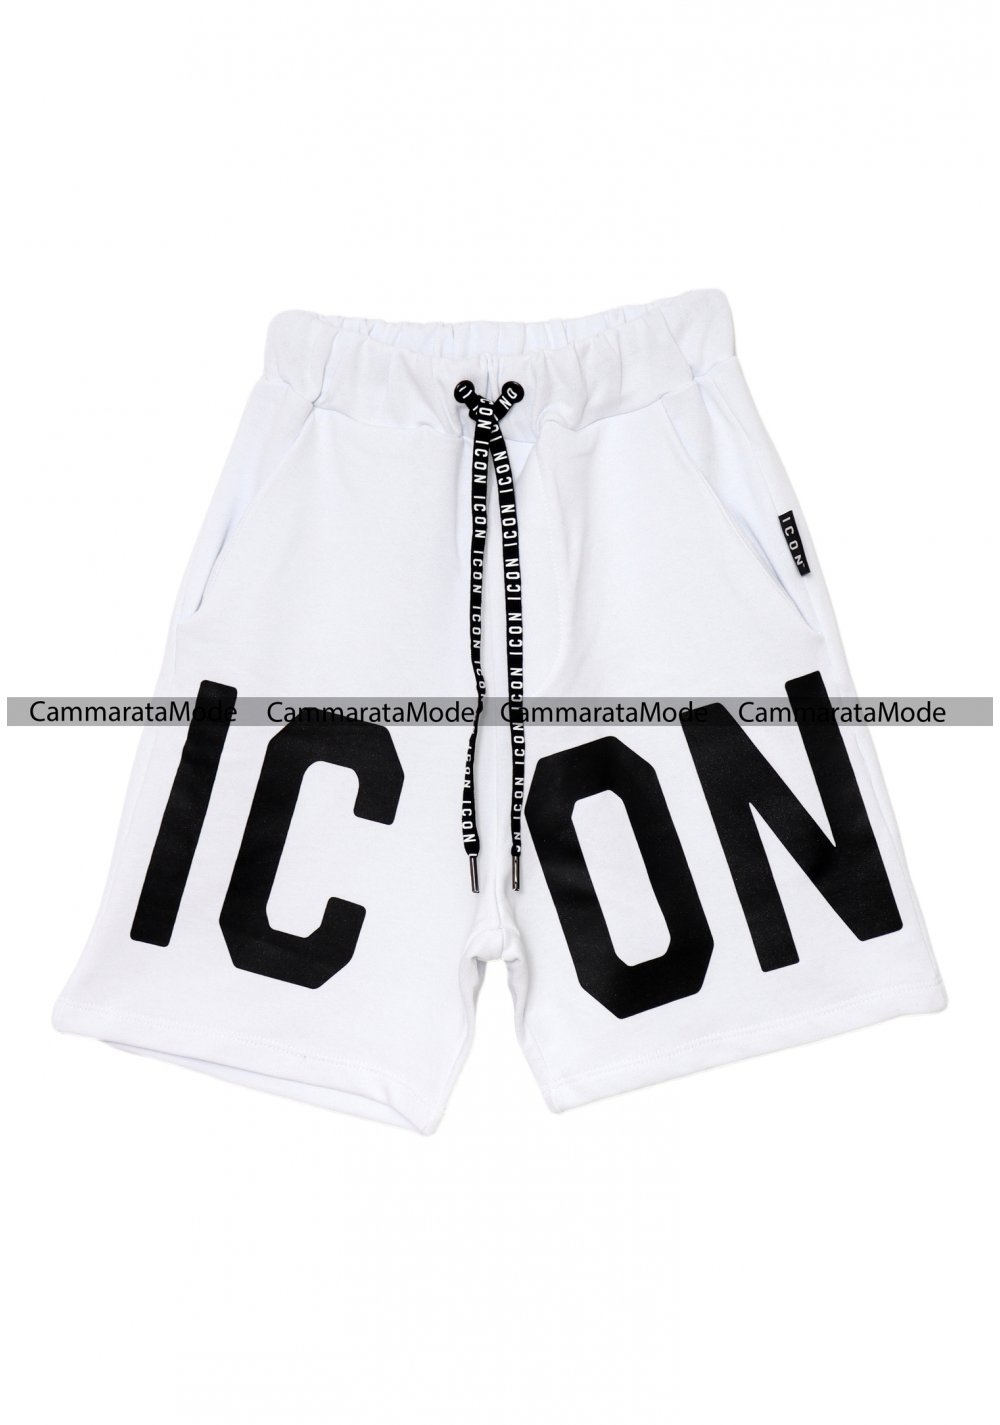 Bermuda uomo ICON - Short bianco in felpa con logo ICON nel davanti